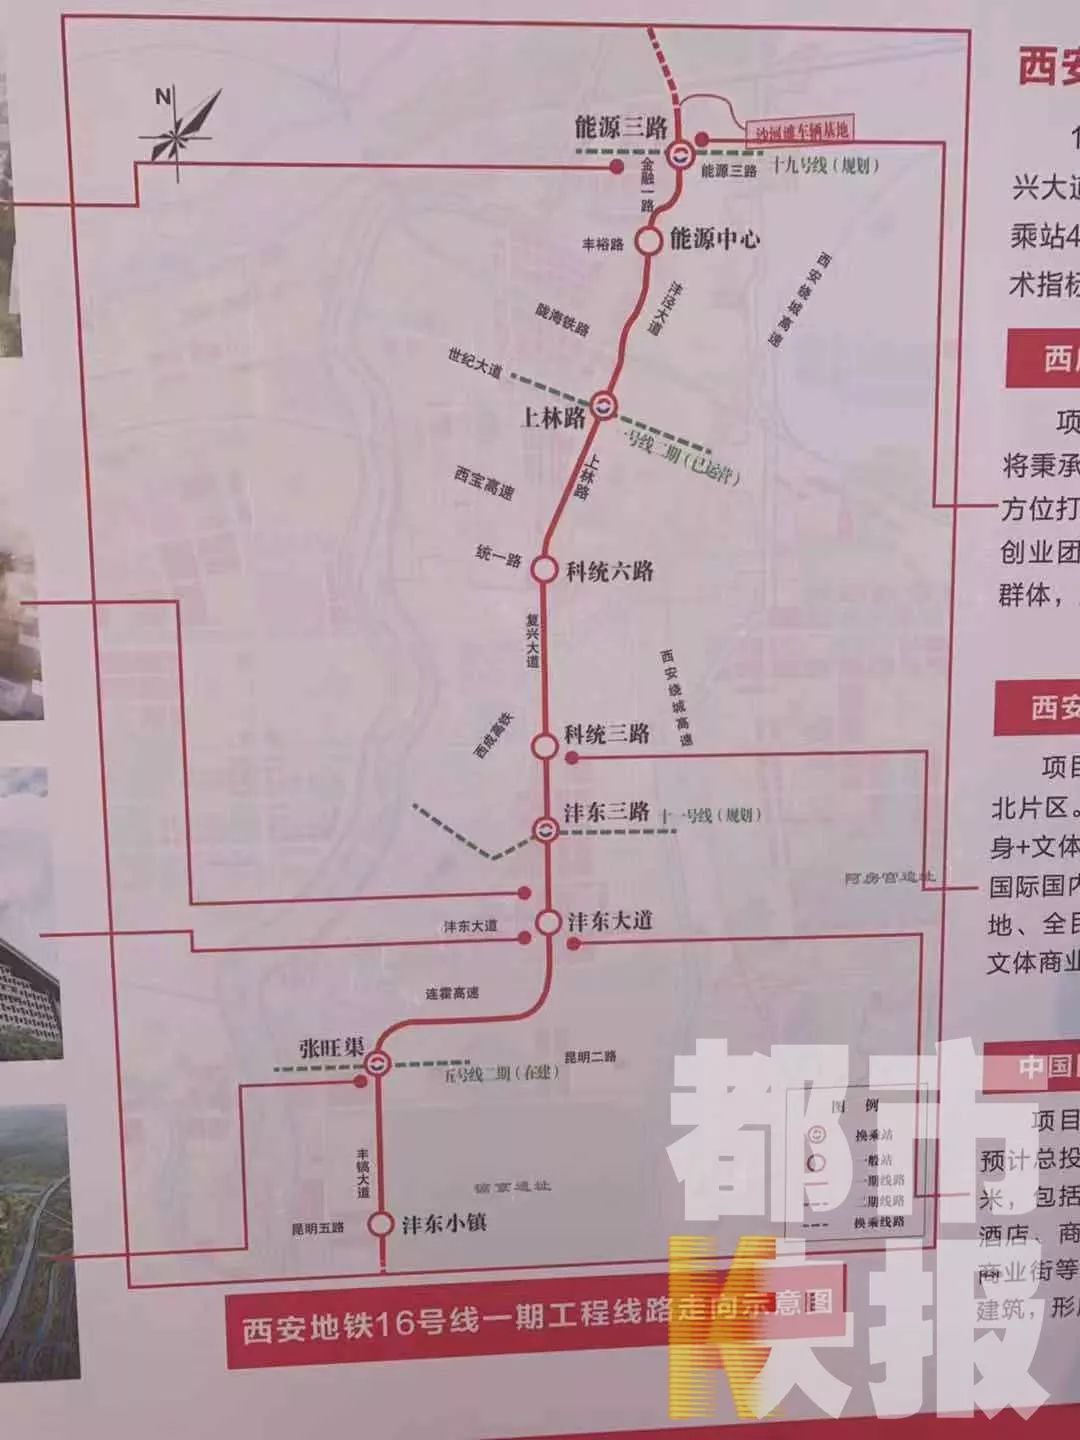 西安地铁1号线三期中标公示!计划2023年建成!